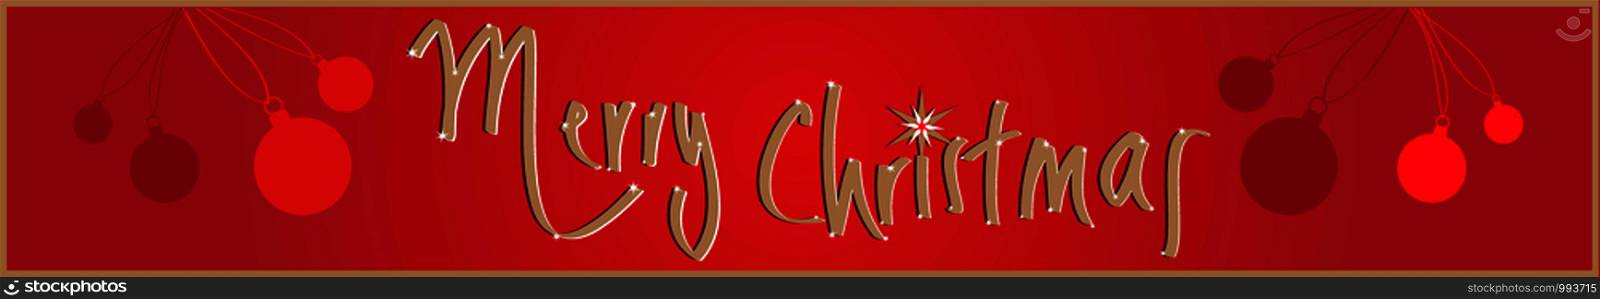 Merry Christmas banner vector illustration EPS 10. Web banner Design